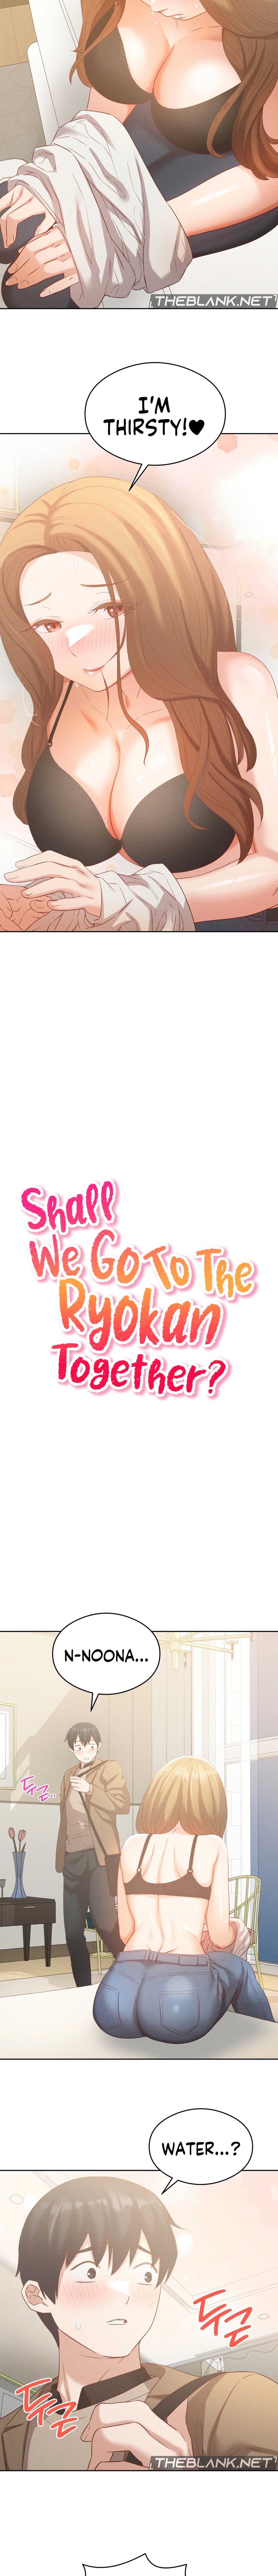 Shall We Go To The Ryokan Together? NEW image